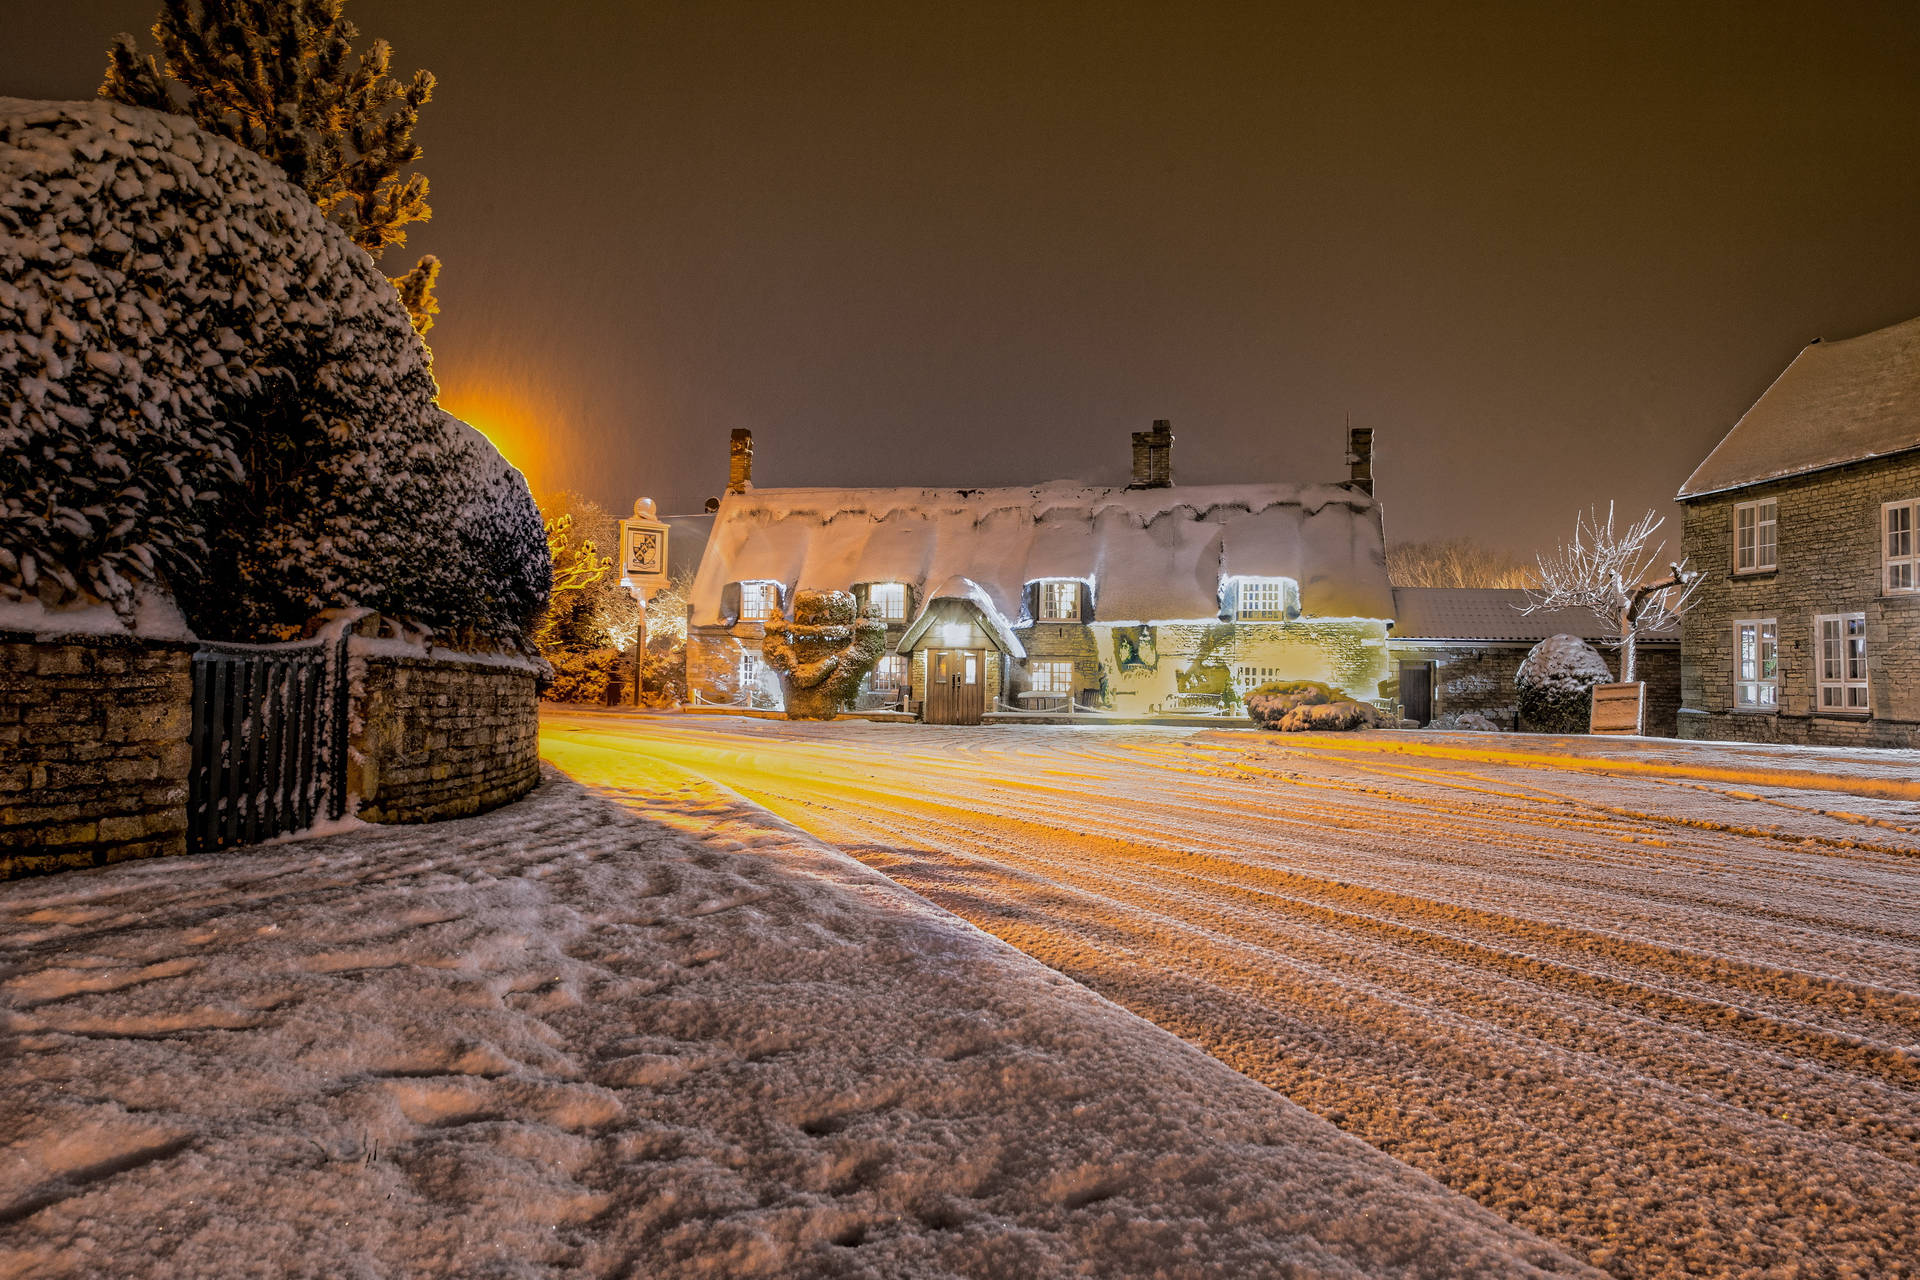 Snowy Village In England Background